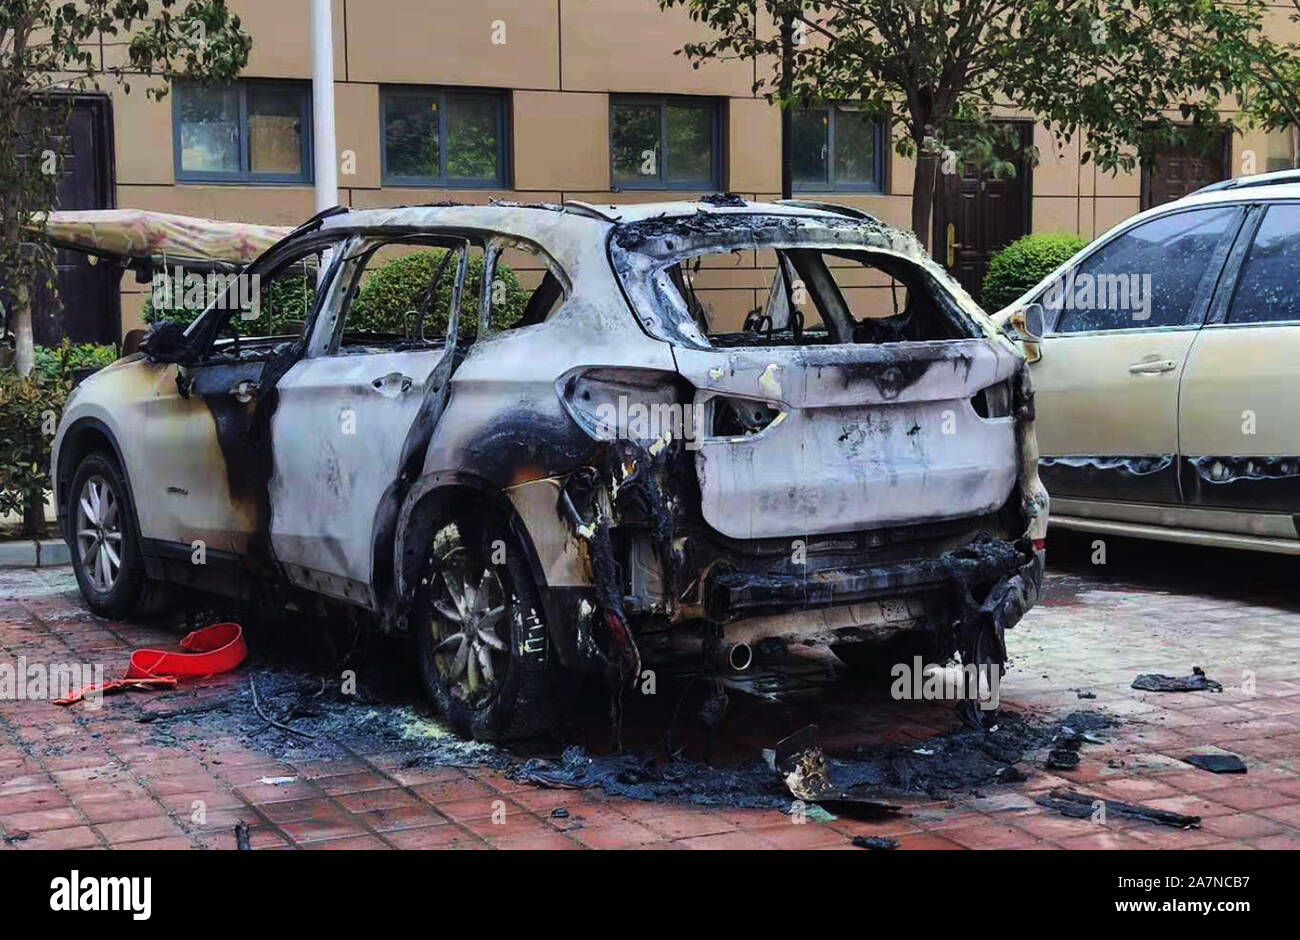 Pciture der Bayerische Motoren Werke (BMW), Links, auf spontane Verbrennung im Residence Parkplatz in Zhengzhou City, Central China Henan Pro Stockfoto